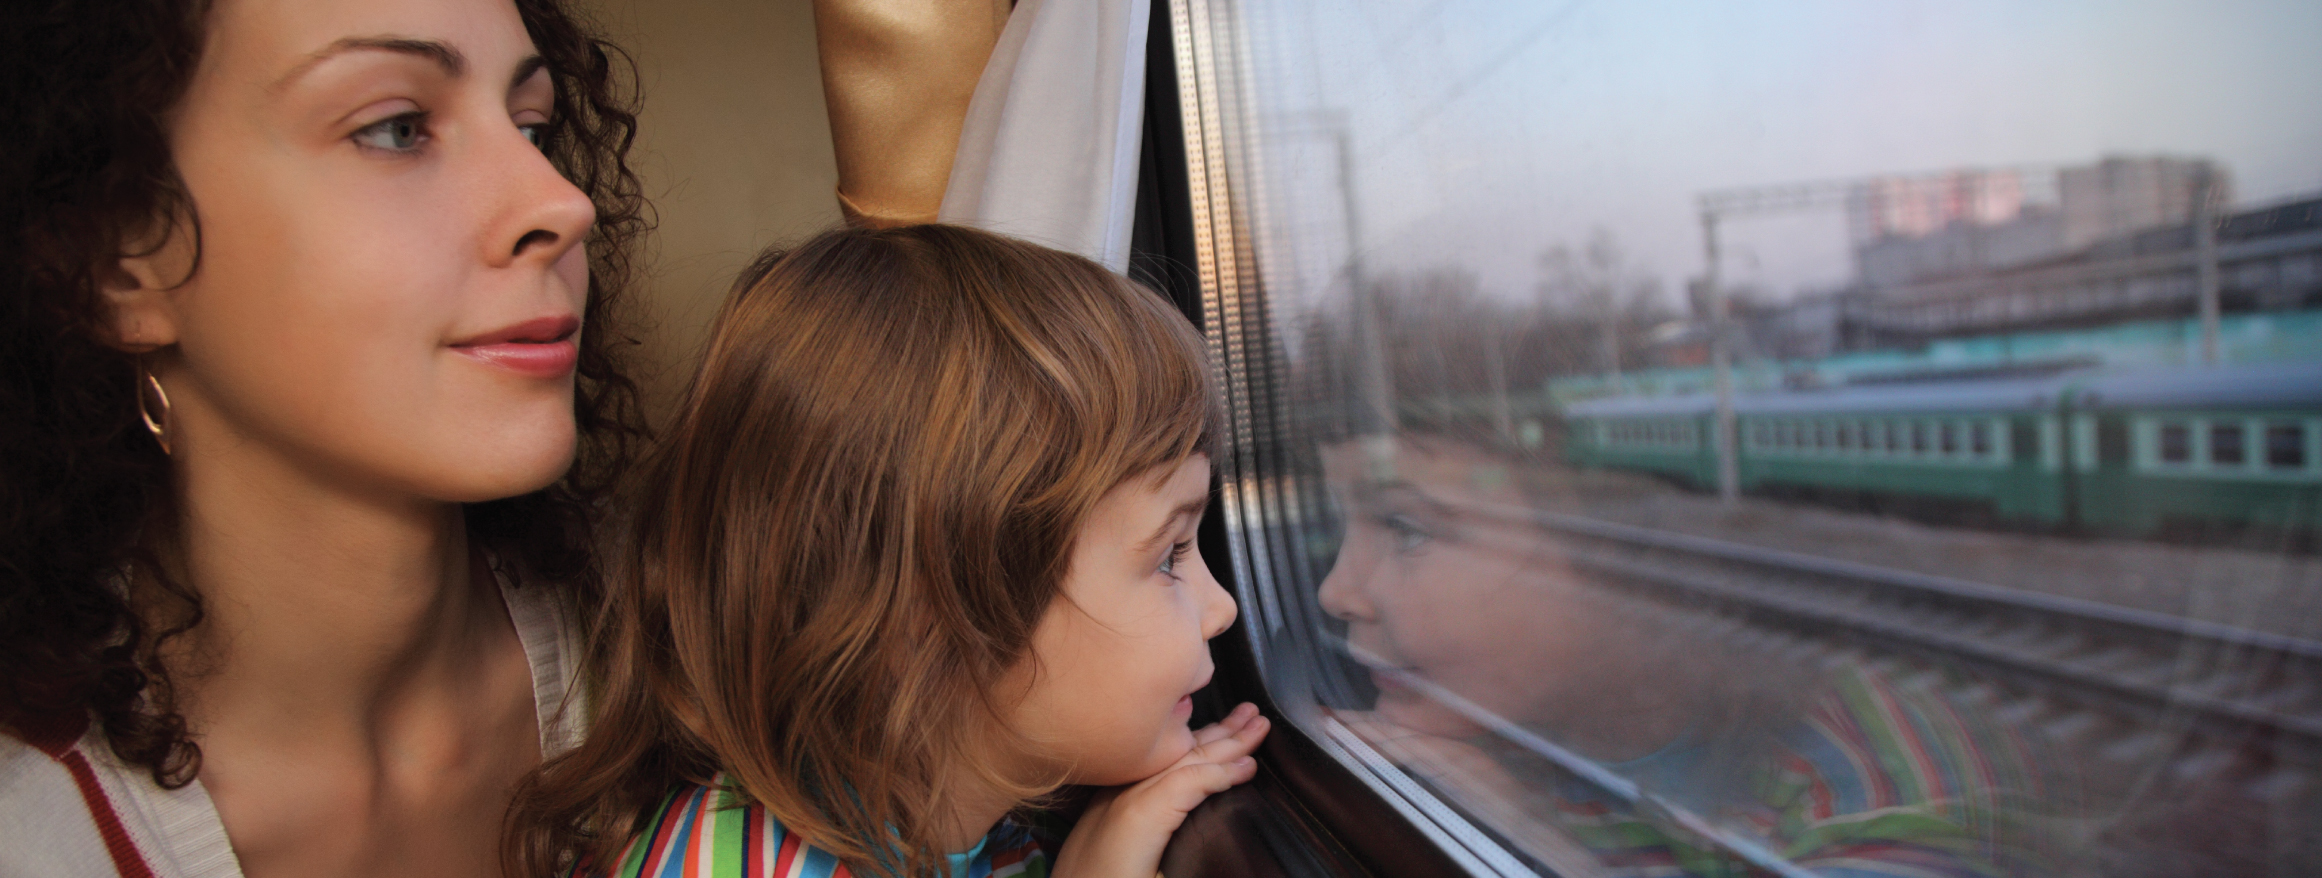 12 поезда мама. Девочки в поезде. Мама с ребенком в поезде. Мама с ребенком в электричке. Поезда для детей.